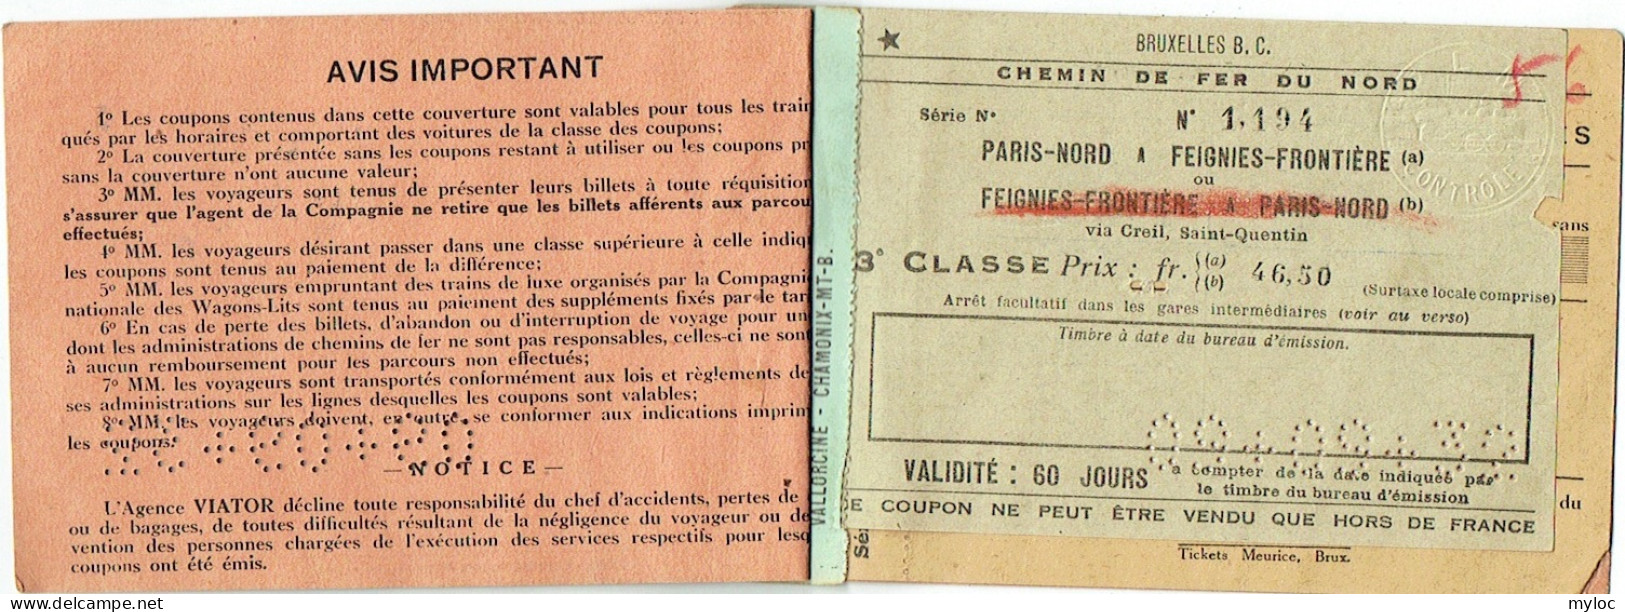 Billet/Ticket De Train.Chemin De Fer Du Nord à Feignes-Frontière Via Creil, St.-Quentin. 1932. Agence De Voyages VIATOR - Europa